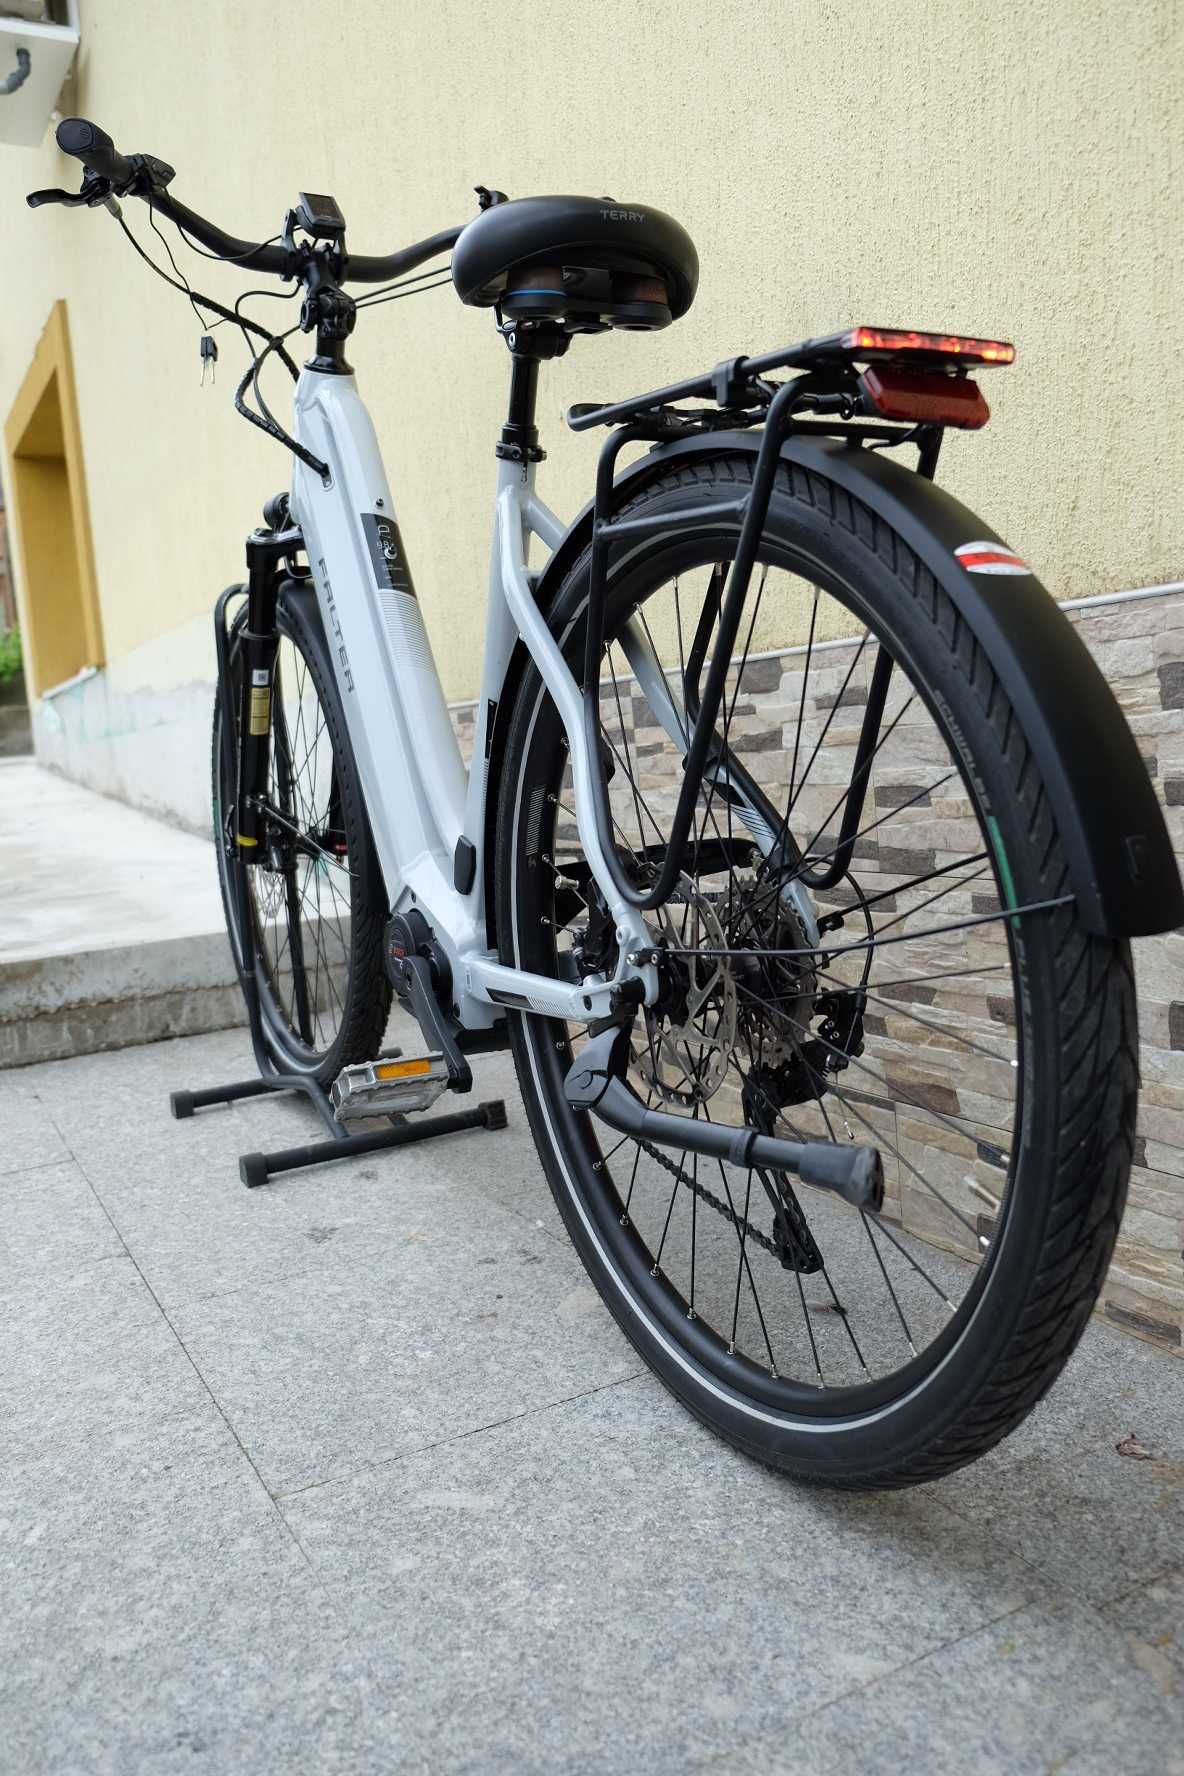 Немски електрически велосипед Falter 28" КАТО НОВ! Bosch CX мотор!